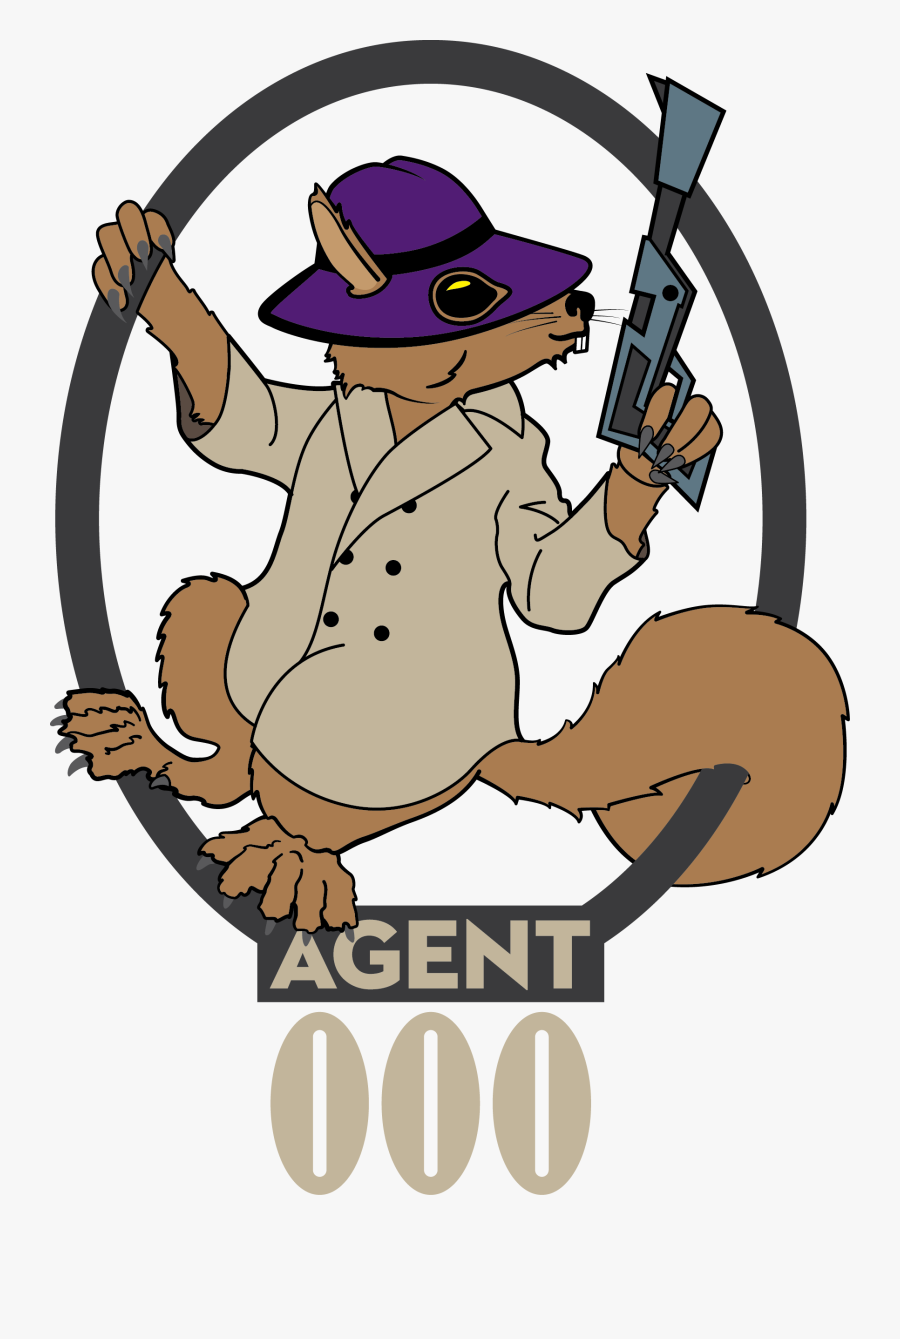 Agent 000 Secret Squirrel - Secret Agent Squirrel, Transparent Clipart